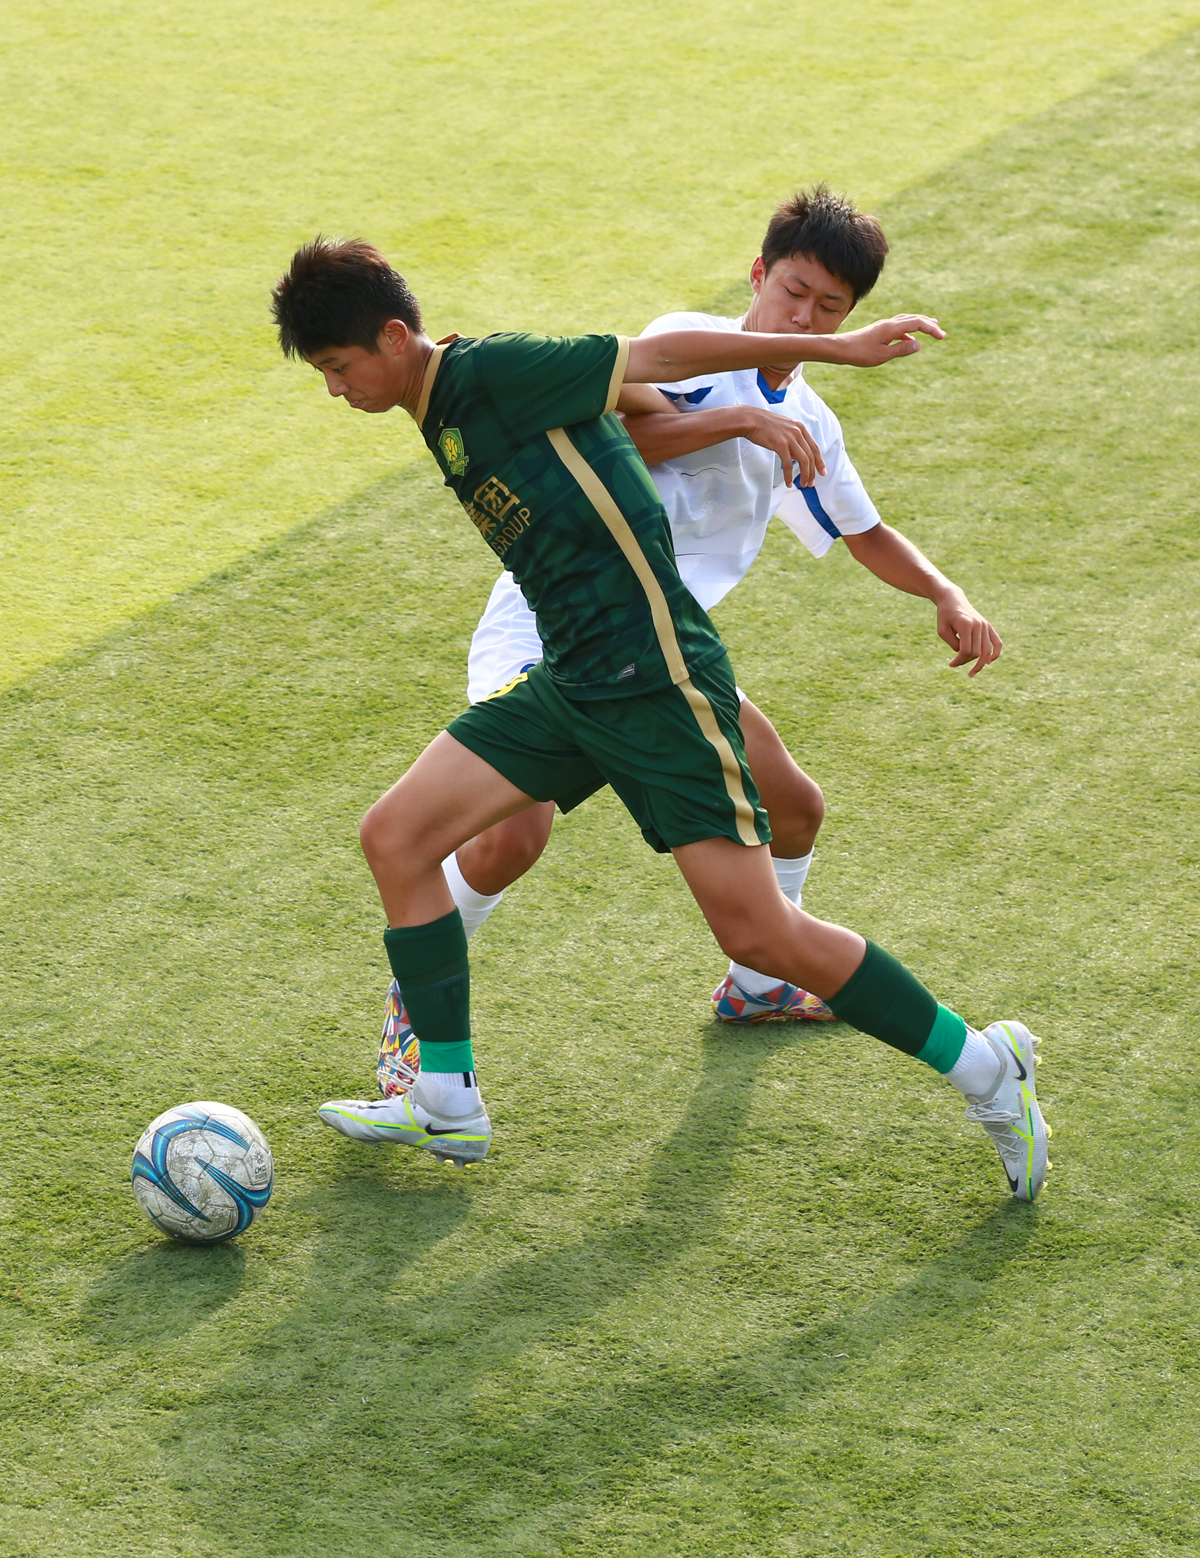 第一届中国青少年足球联赛(北京赛区)比赛落幕36支队伍参加比赛